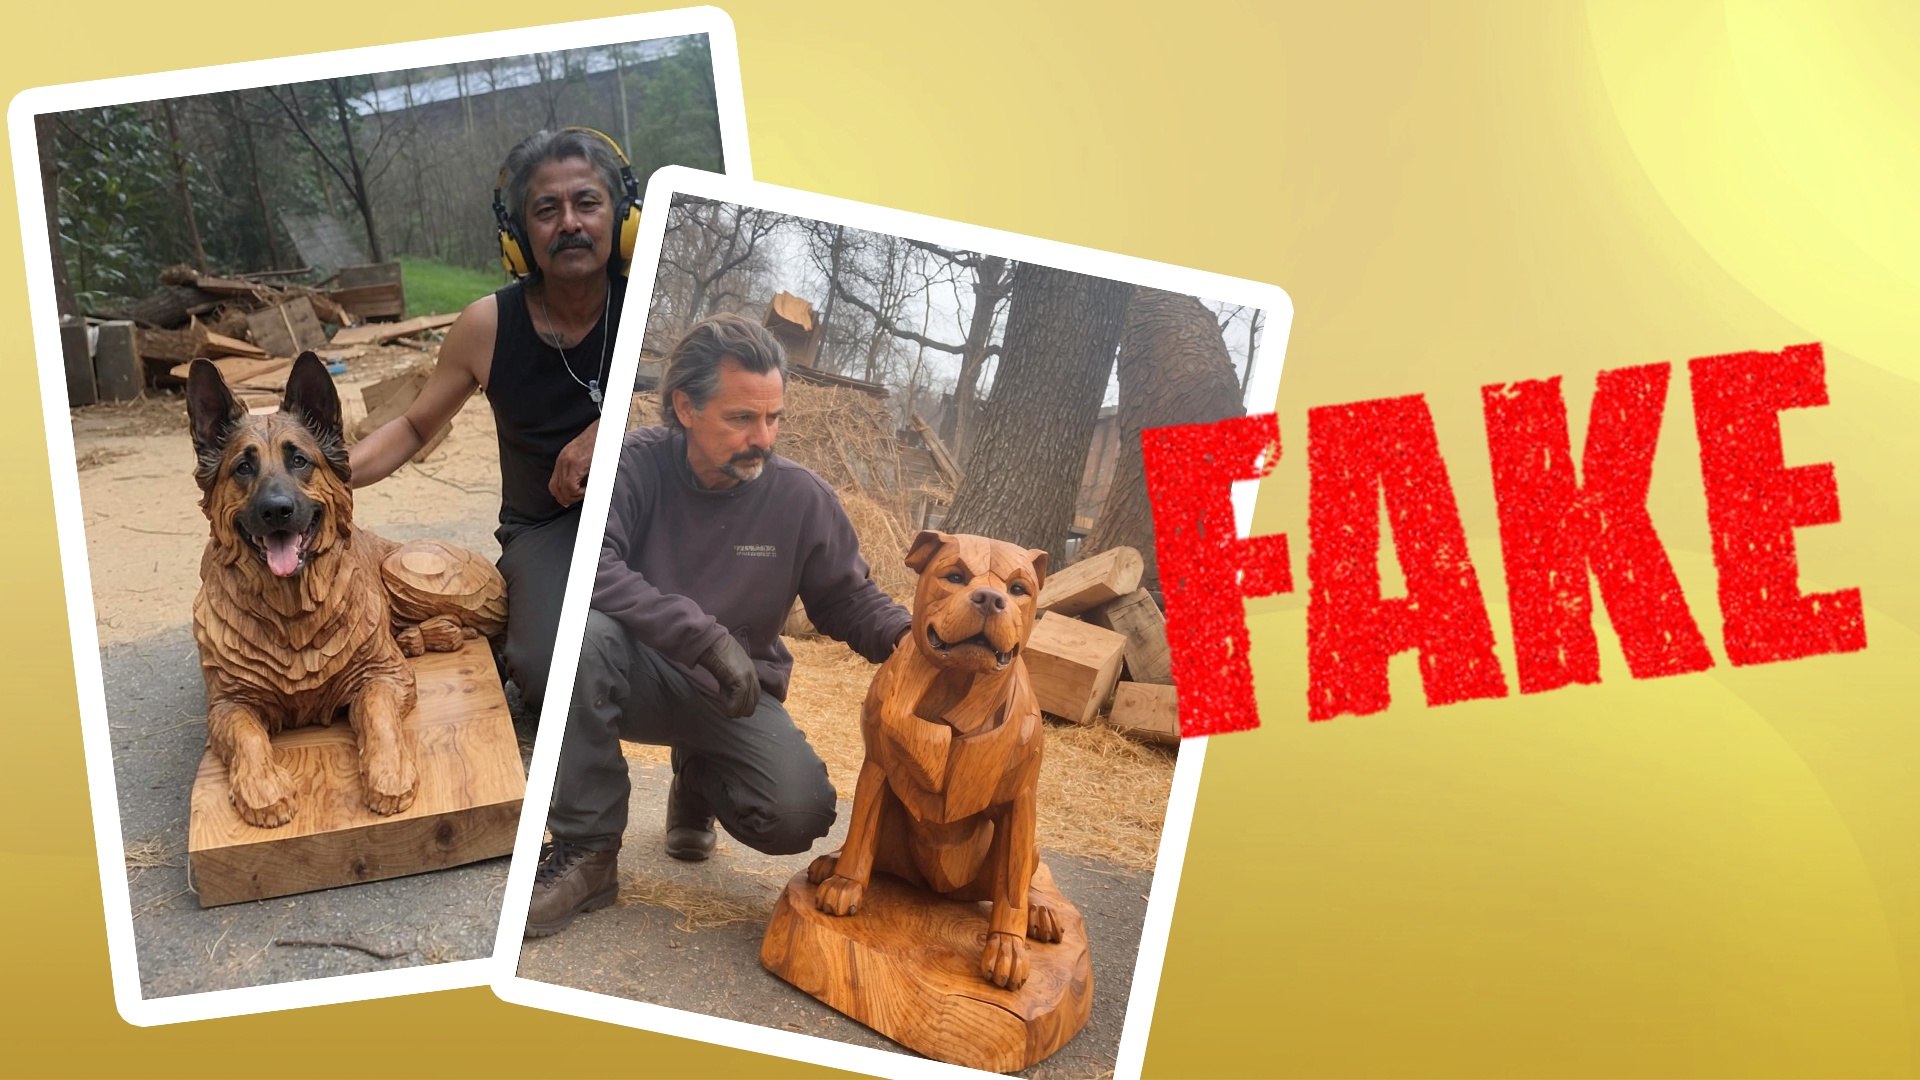 #Mann mit Holzhund: Tausende teilen das Foto auf Facebook – dabei realisieren sie nicht, dass sie ausgenutzt werden